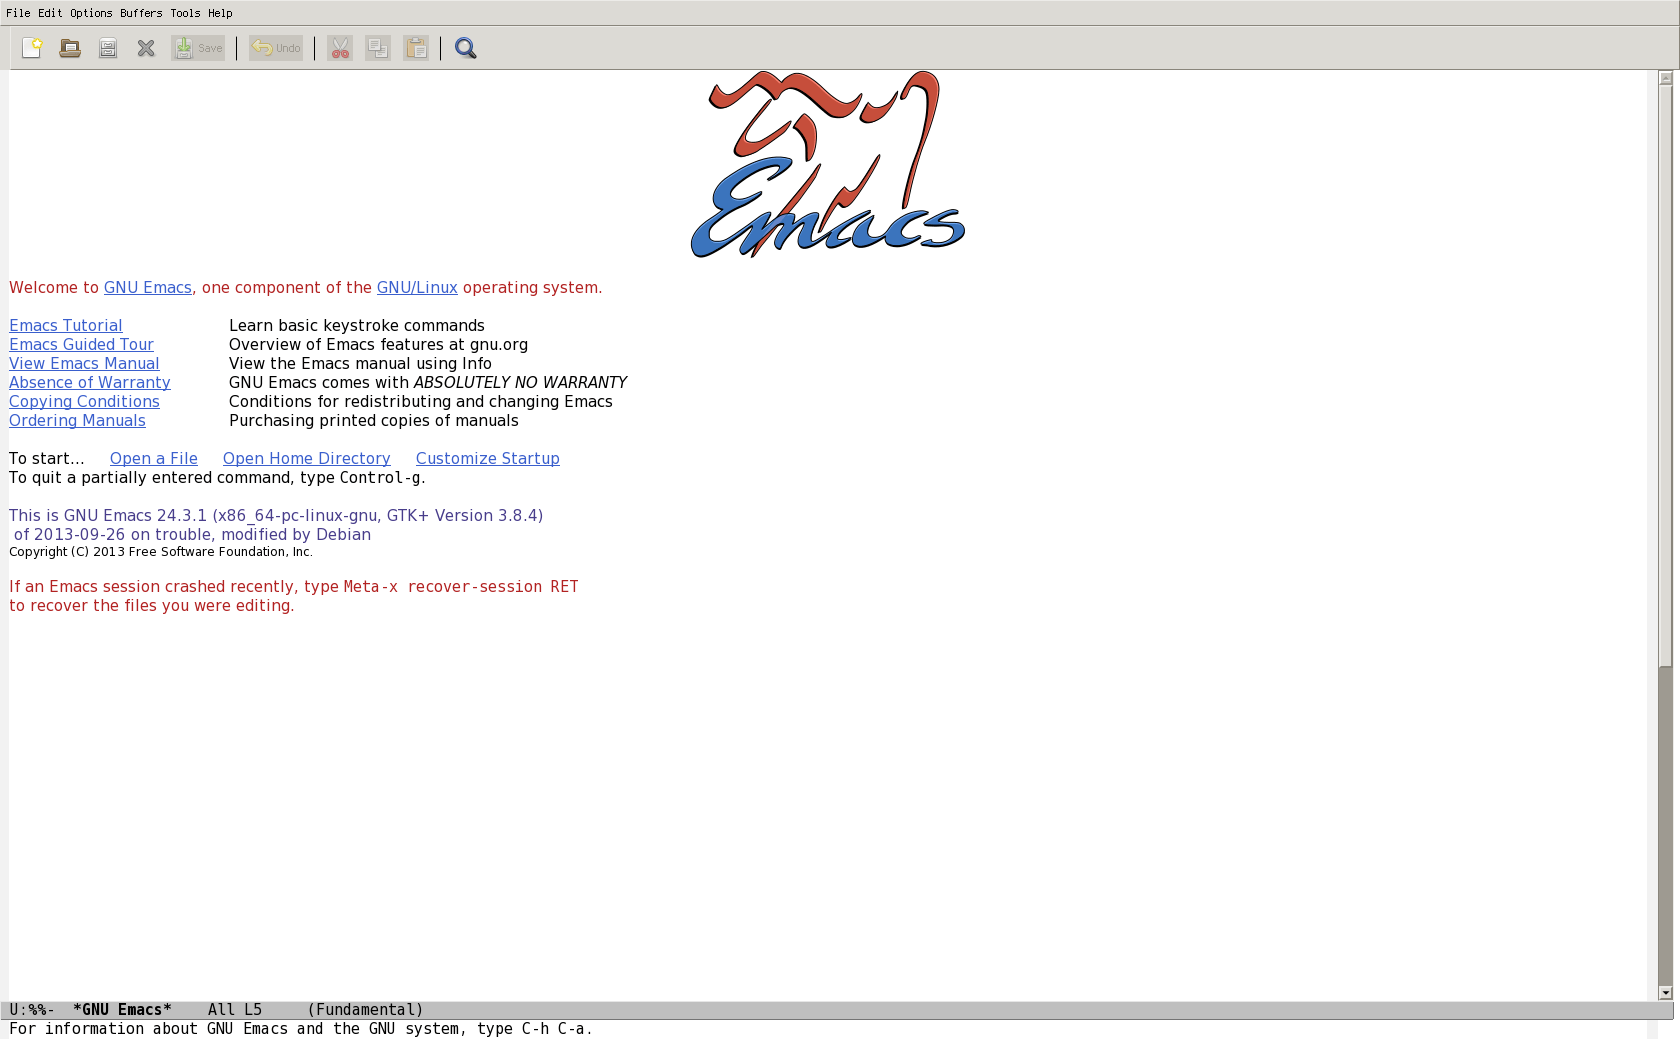 Emacs defaults